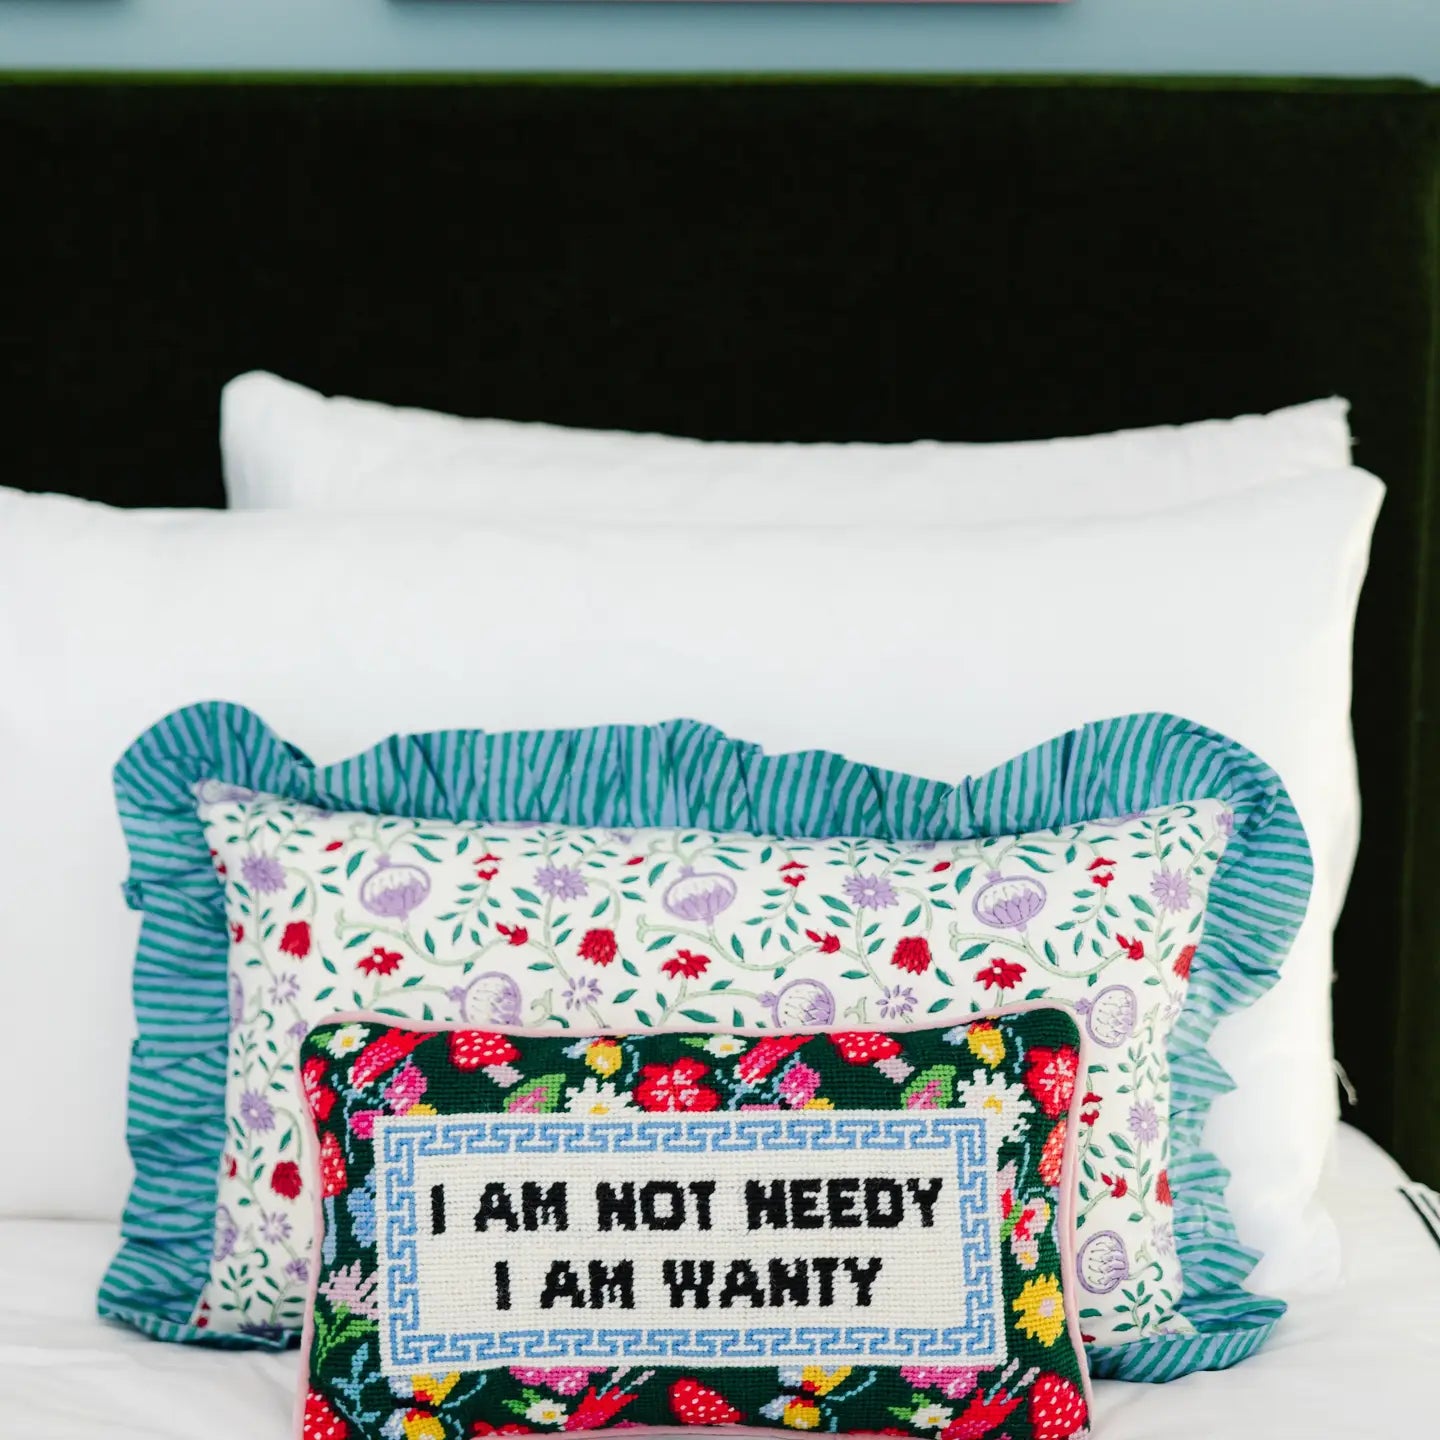 Not Needy Needlepoint Pillow